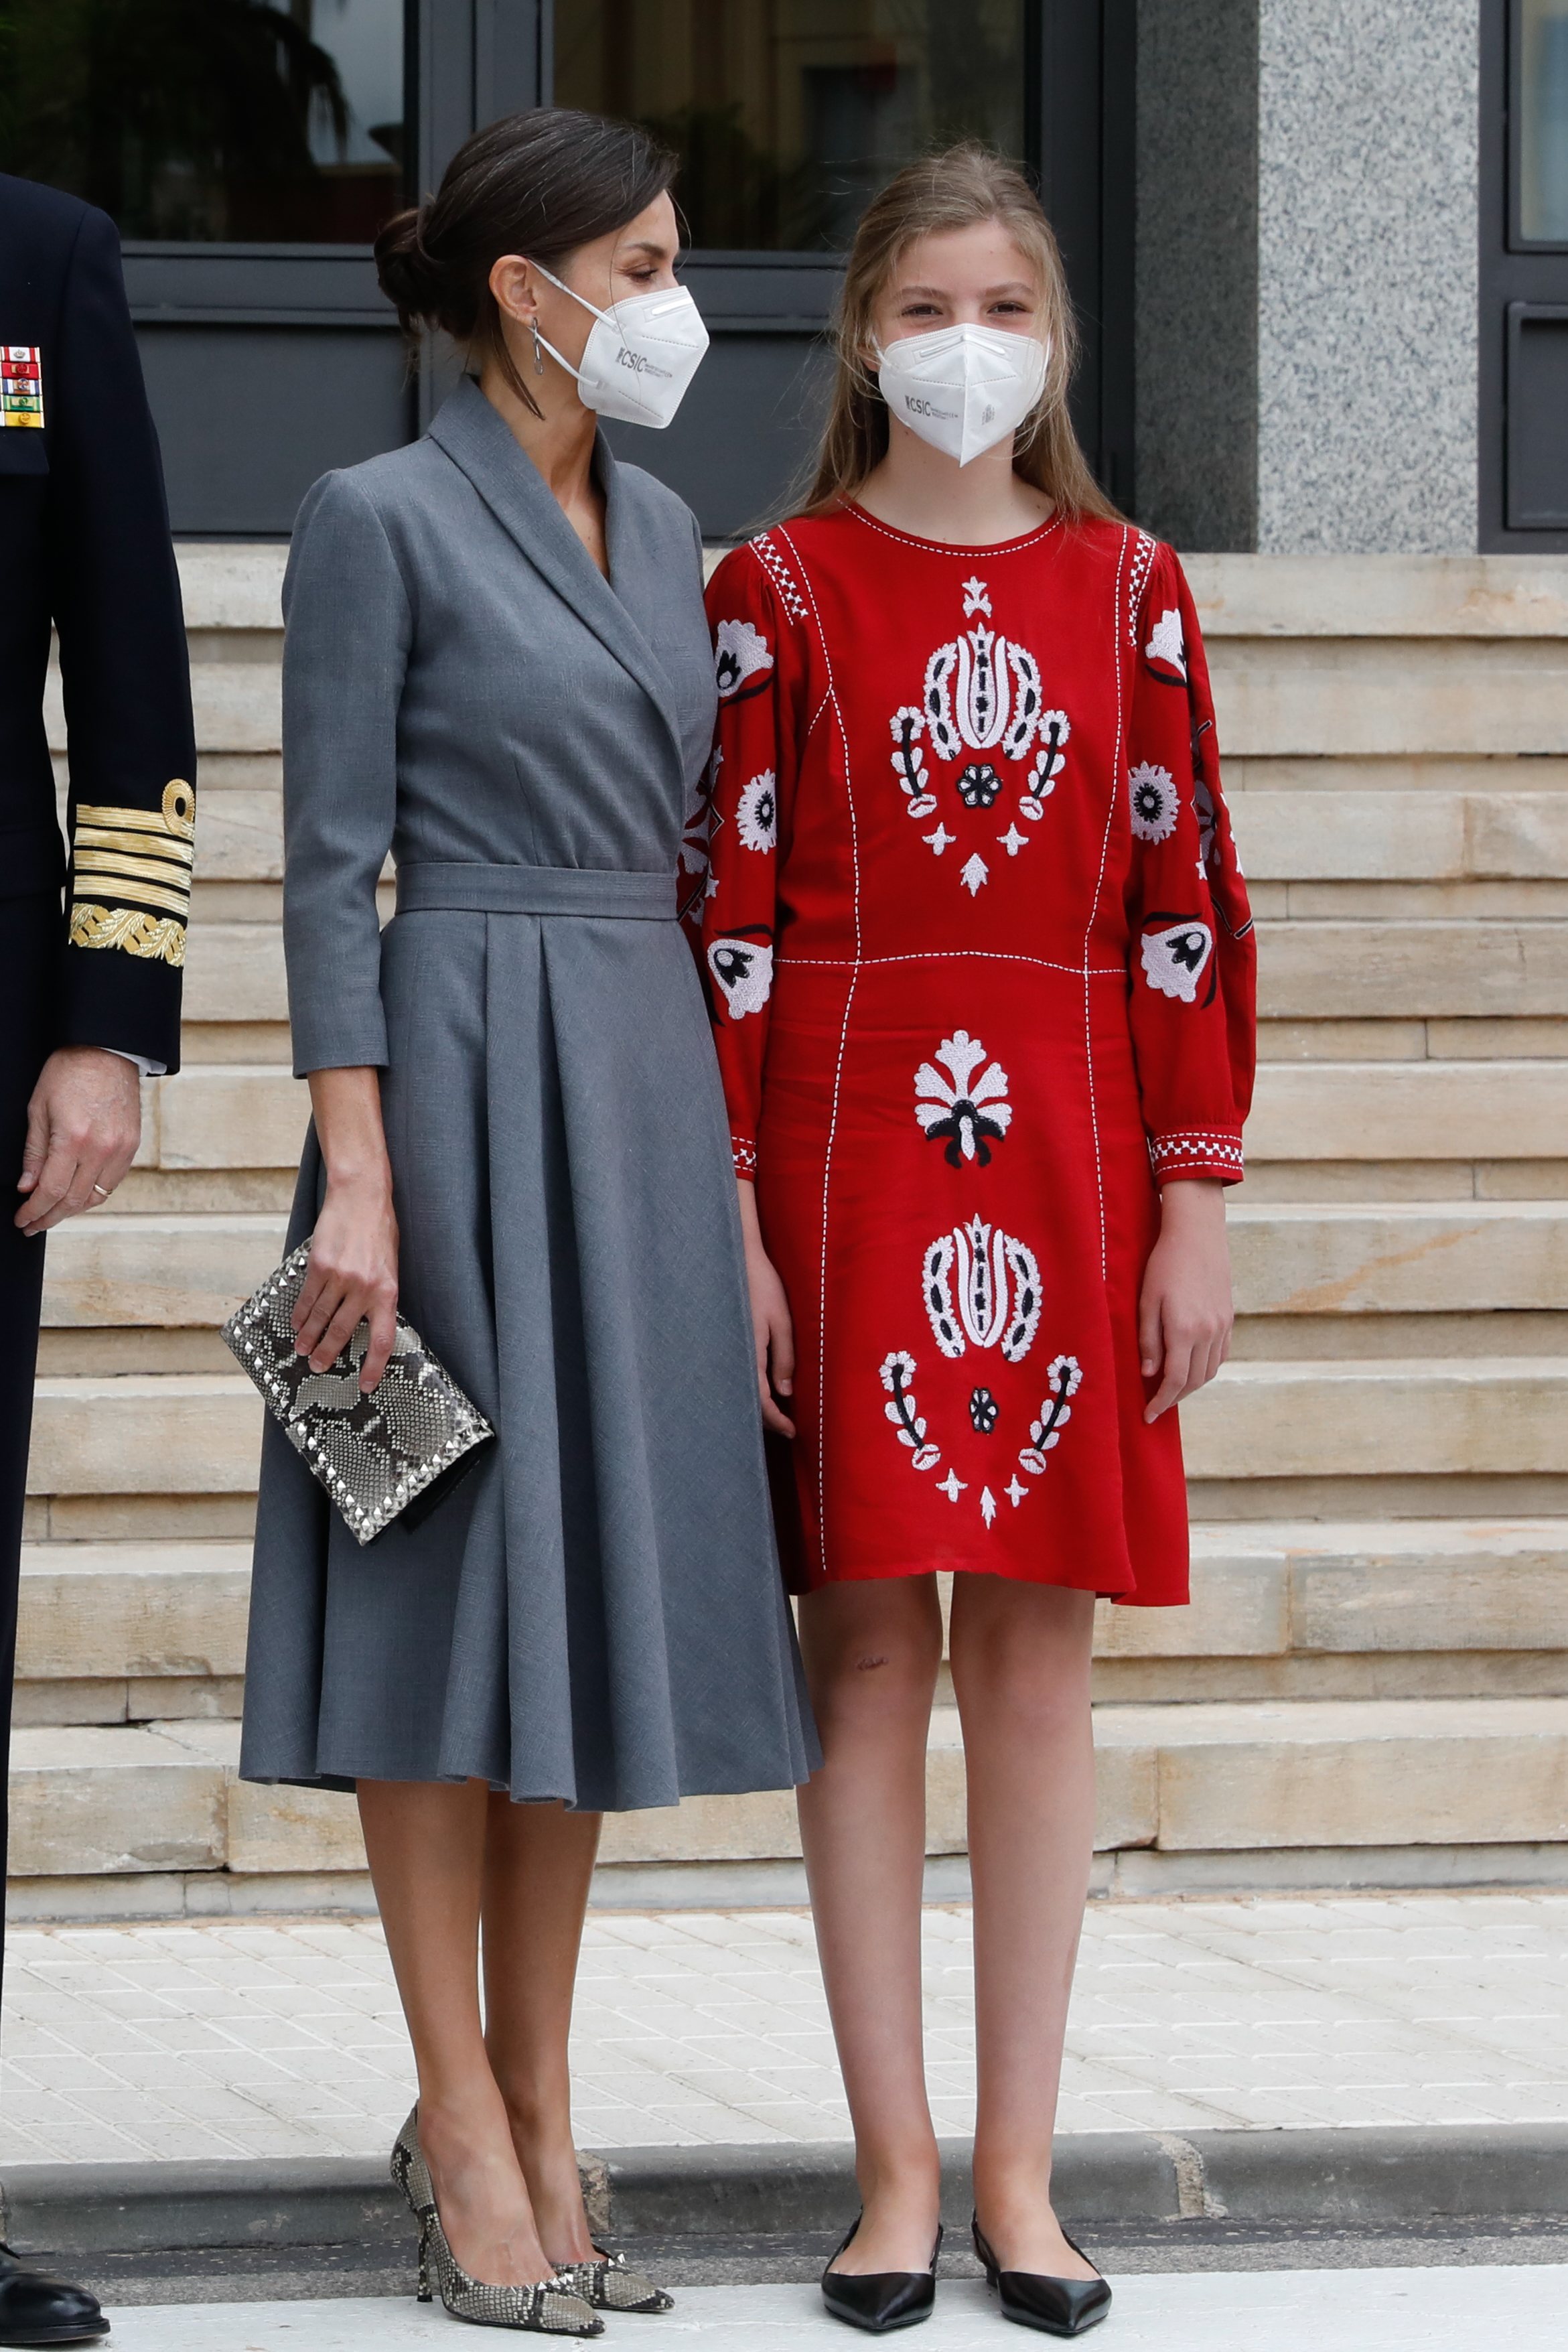 La Infanta Sofía apostó por el look más llamativo | Foto: Telecinco.es